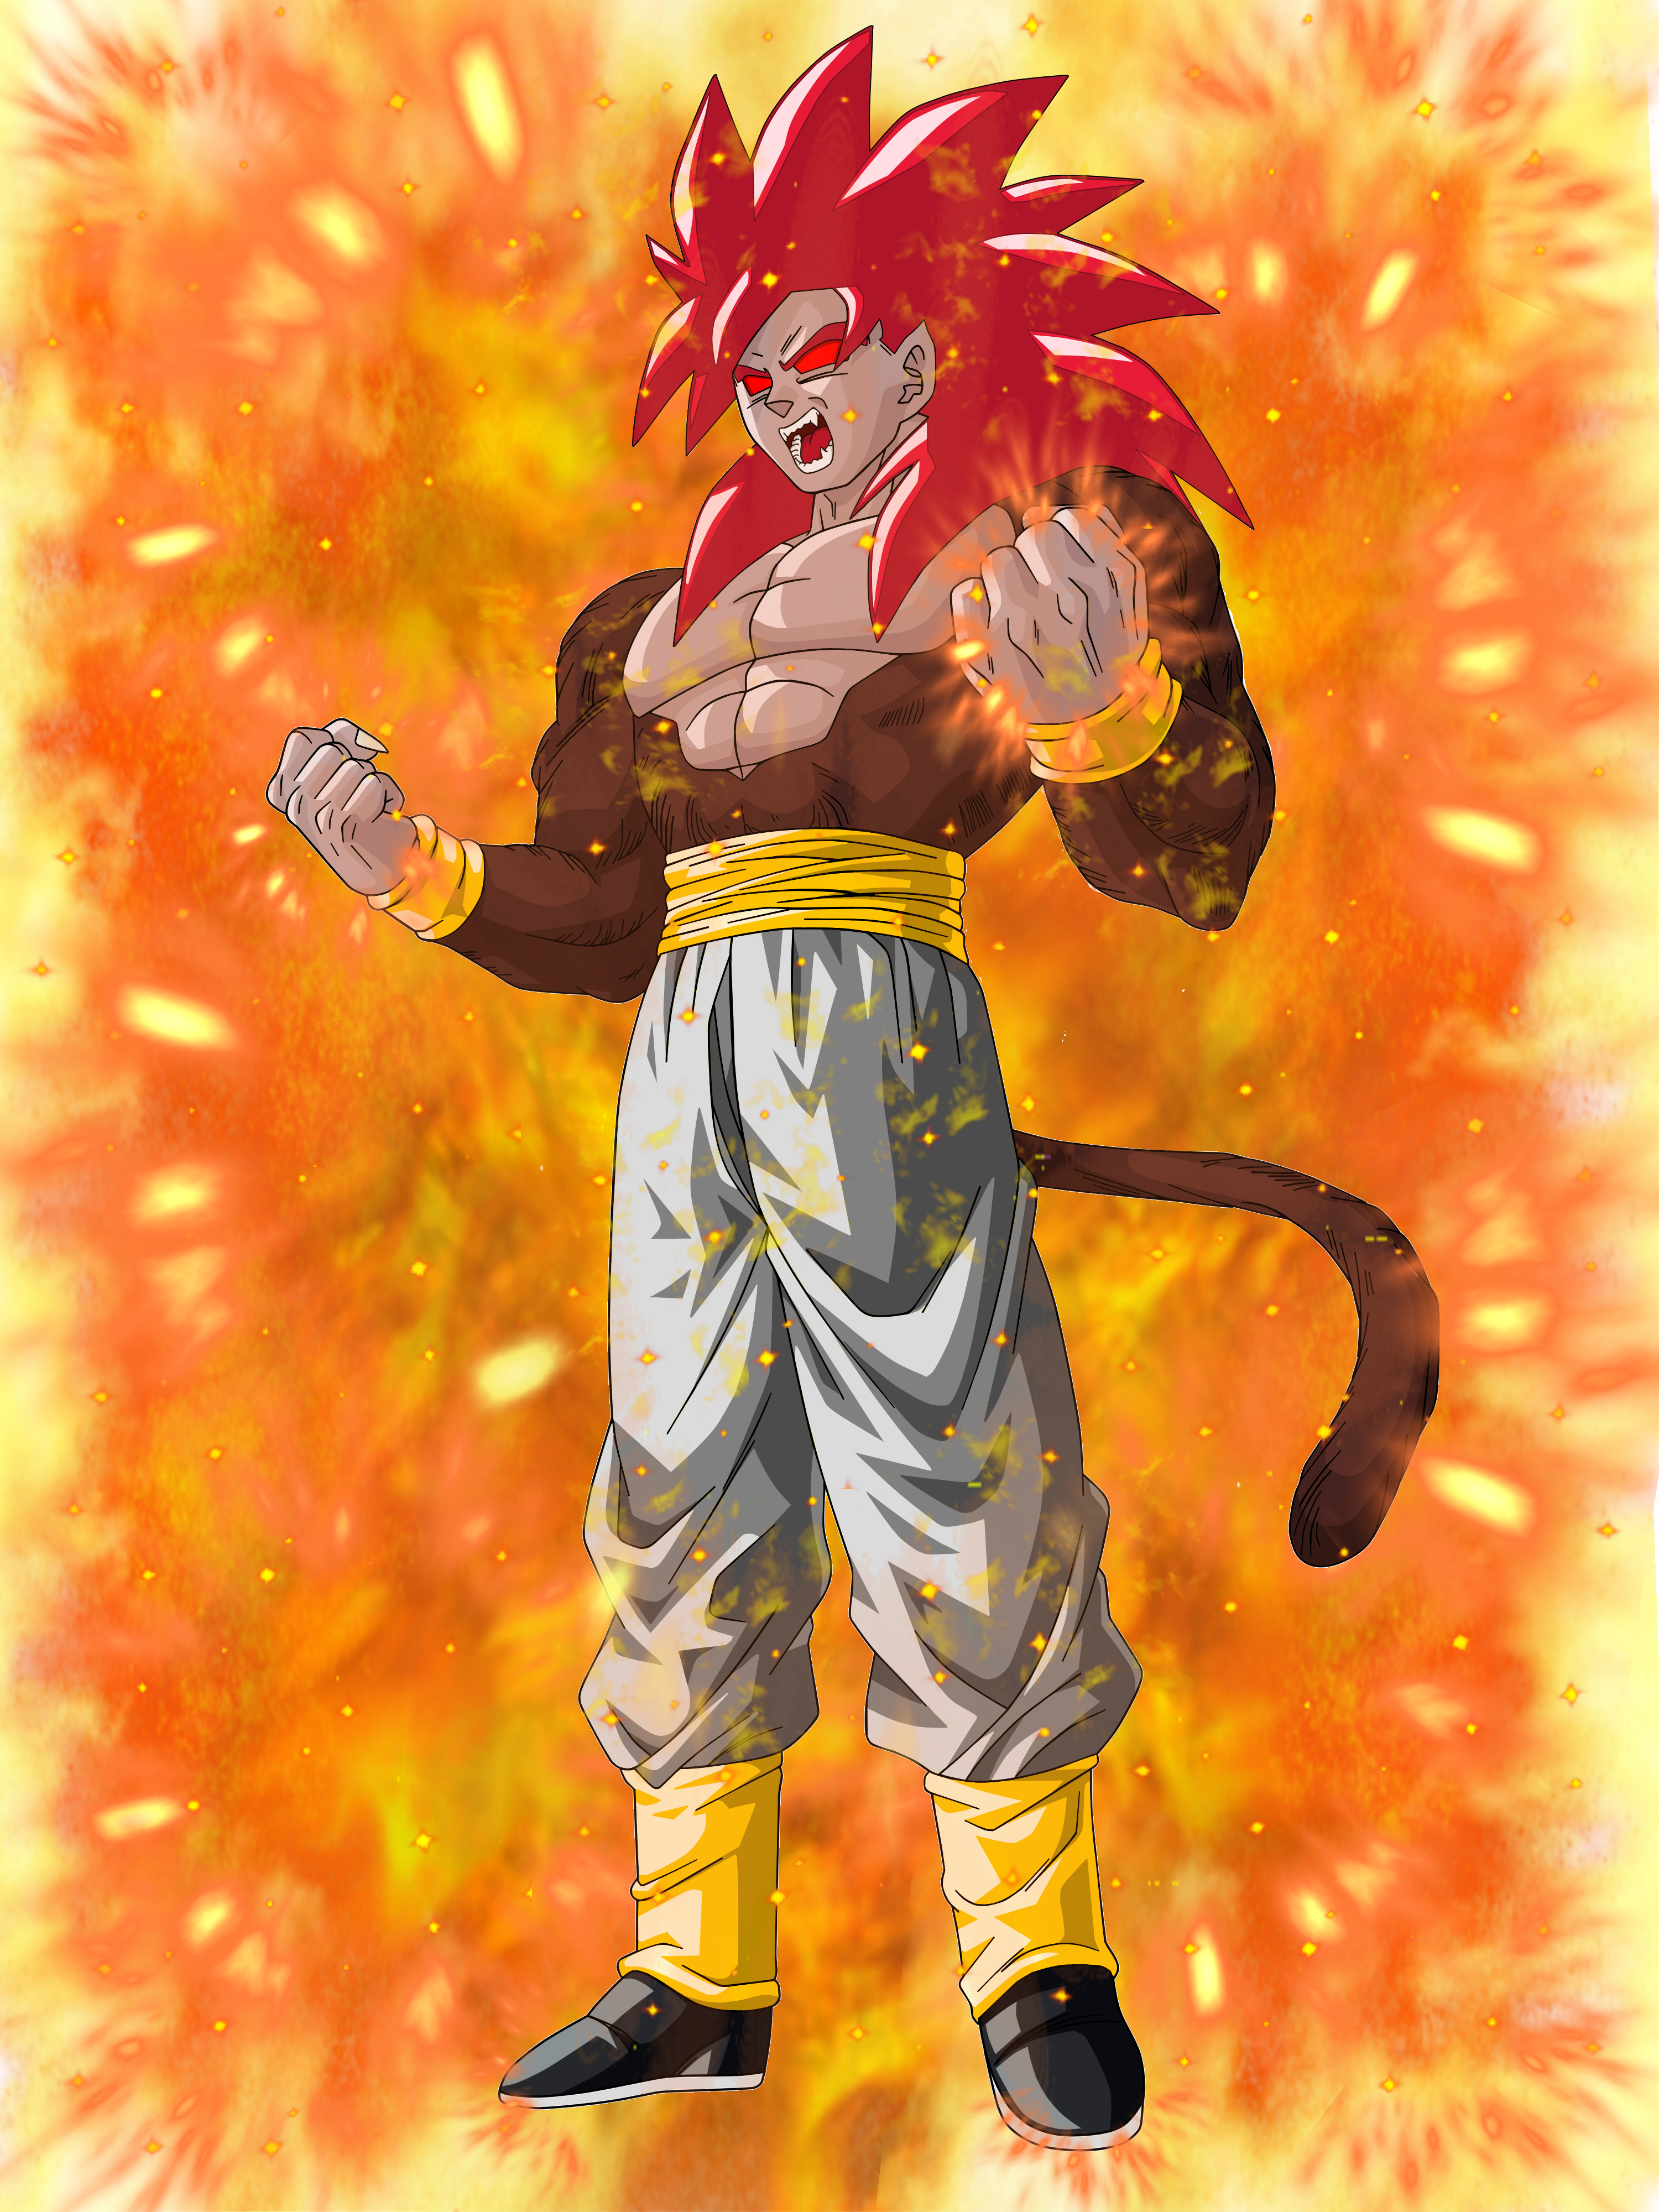 Super Saiyan 4 God Goku